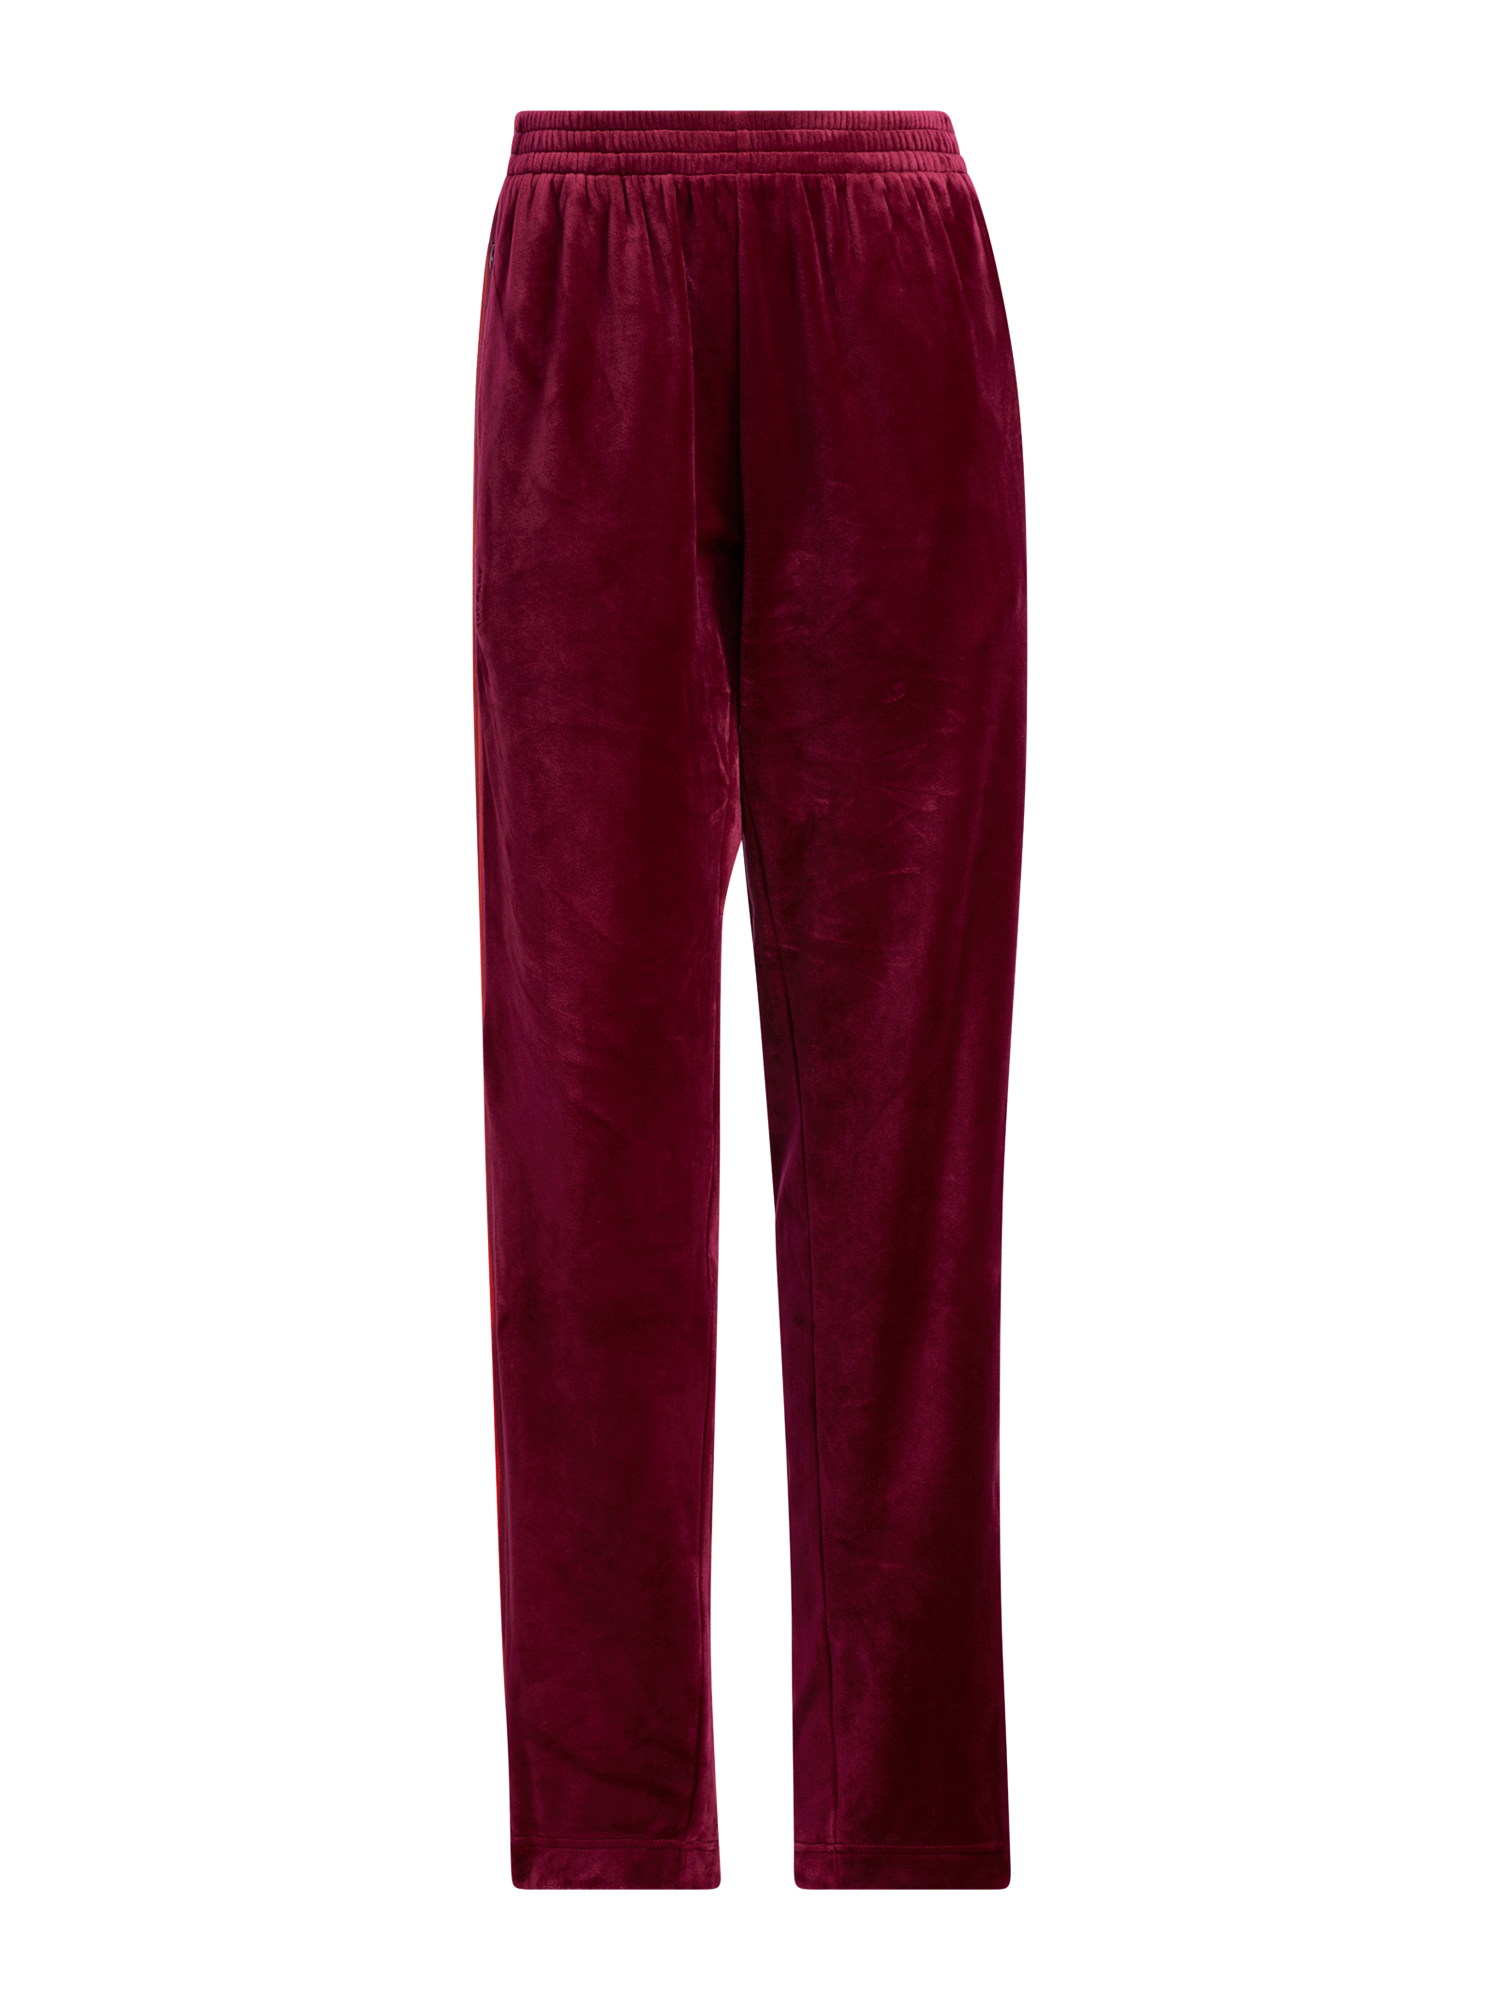 Abbigliamento Taglie comode ADIDAS ORIGINALS Pantaloni in Rosso Scuro 